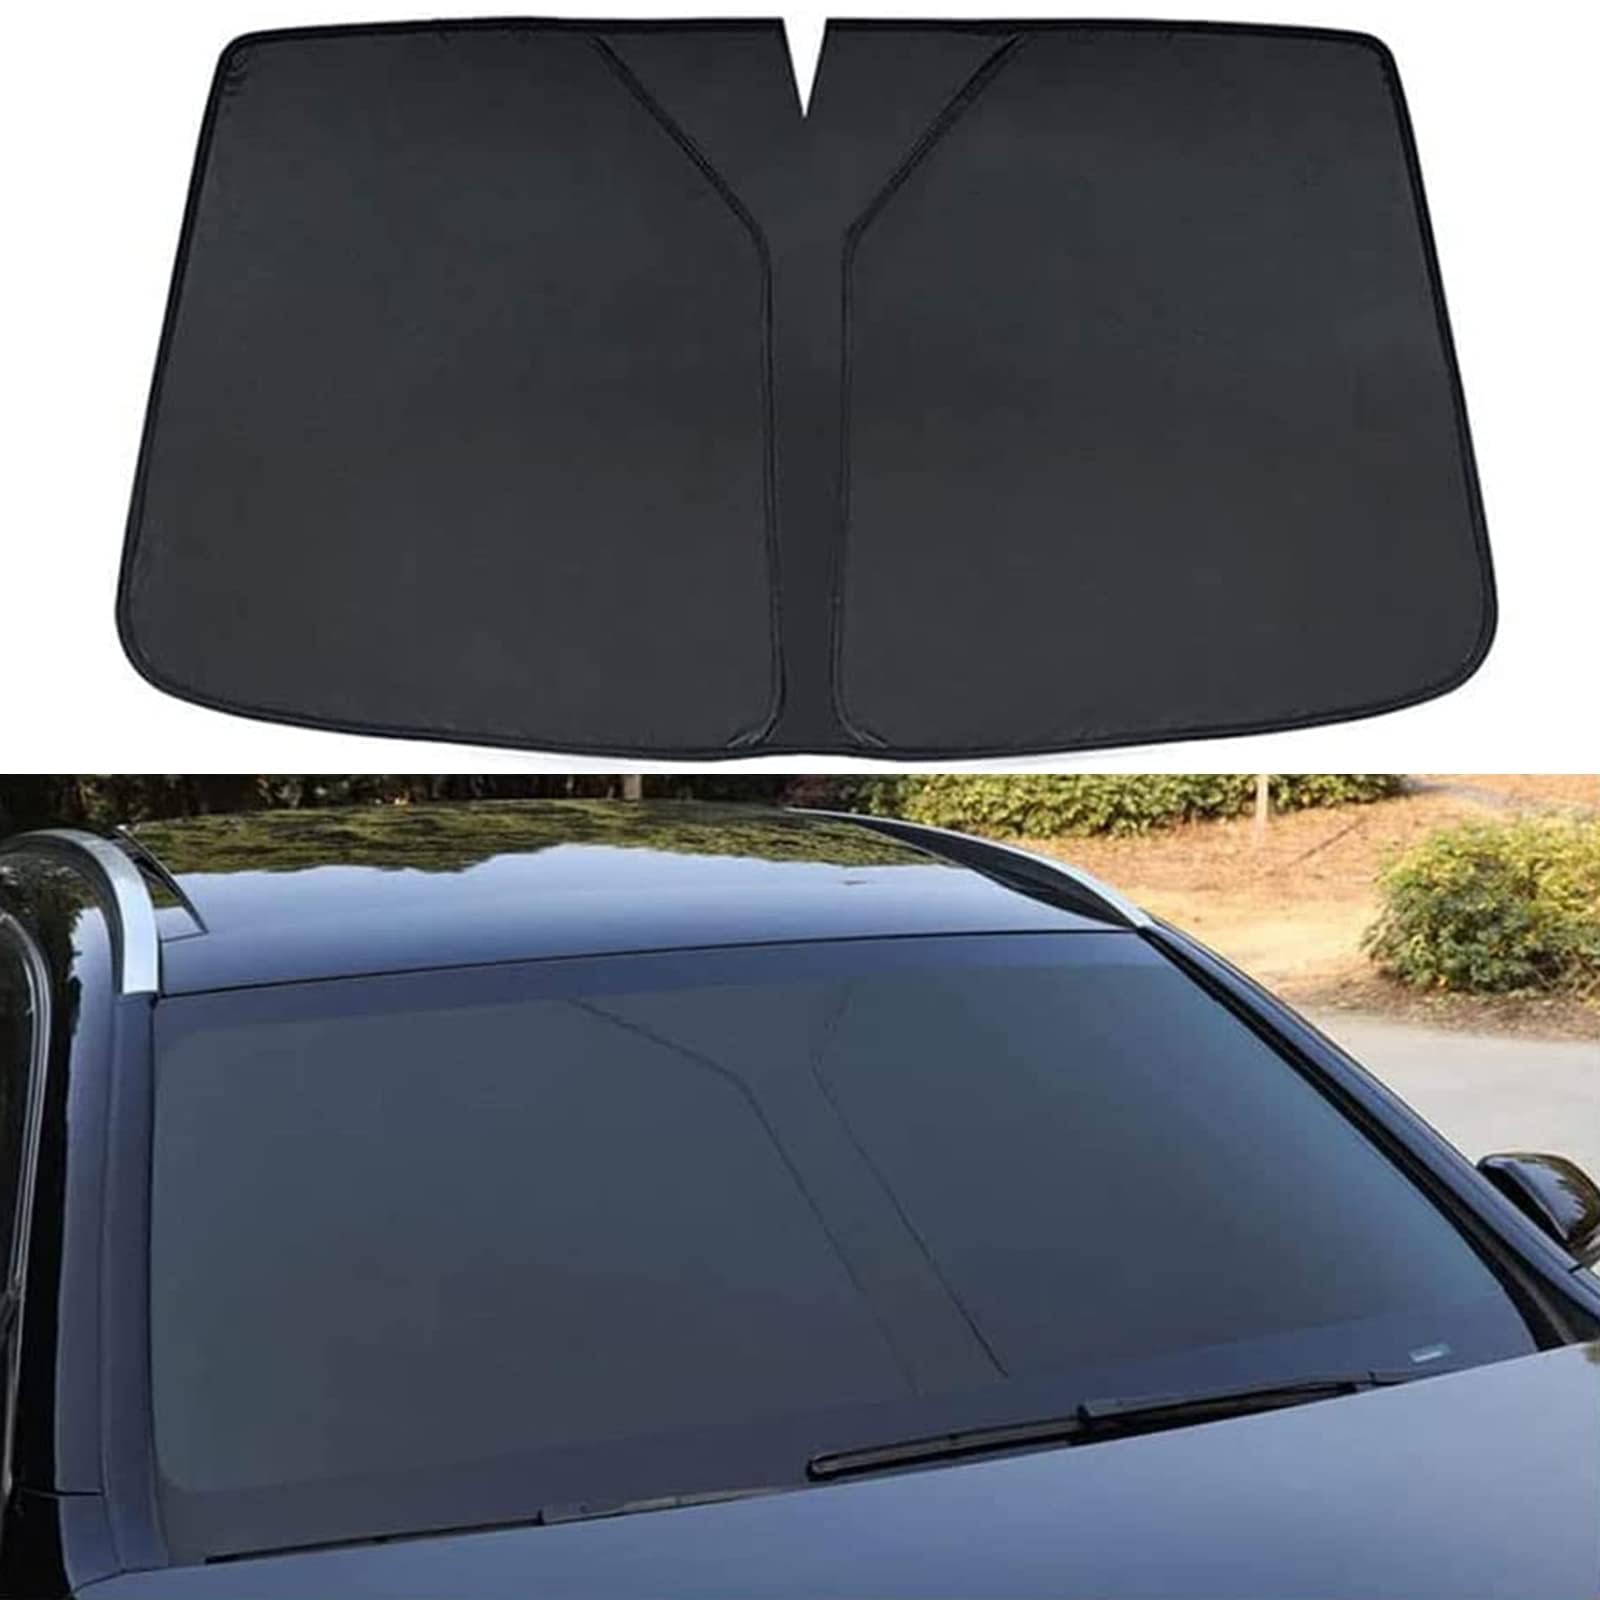 Auto Windschutzscheibe Sonnenschutz für Vw Tiguan X,Verdunkelung Faltbar und Tragbar Wärmeisolierung Windschutzscheiben-Innenzubehör,Black von MUGONGWEI